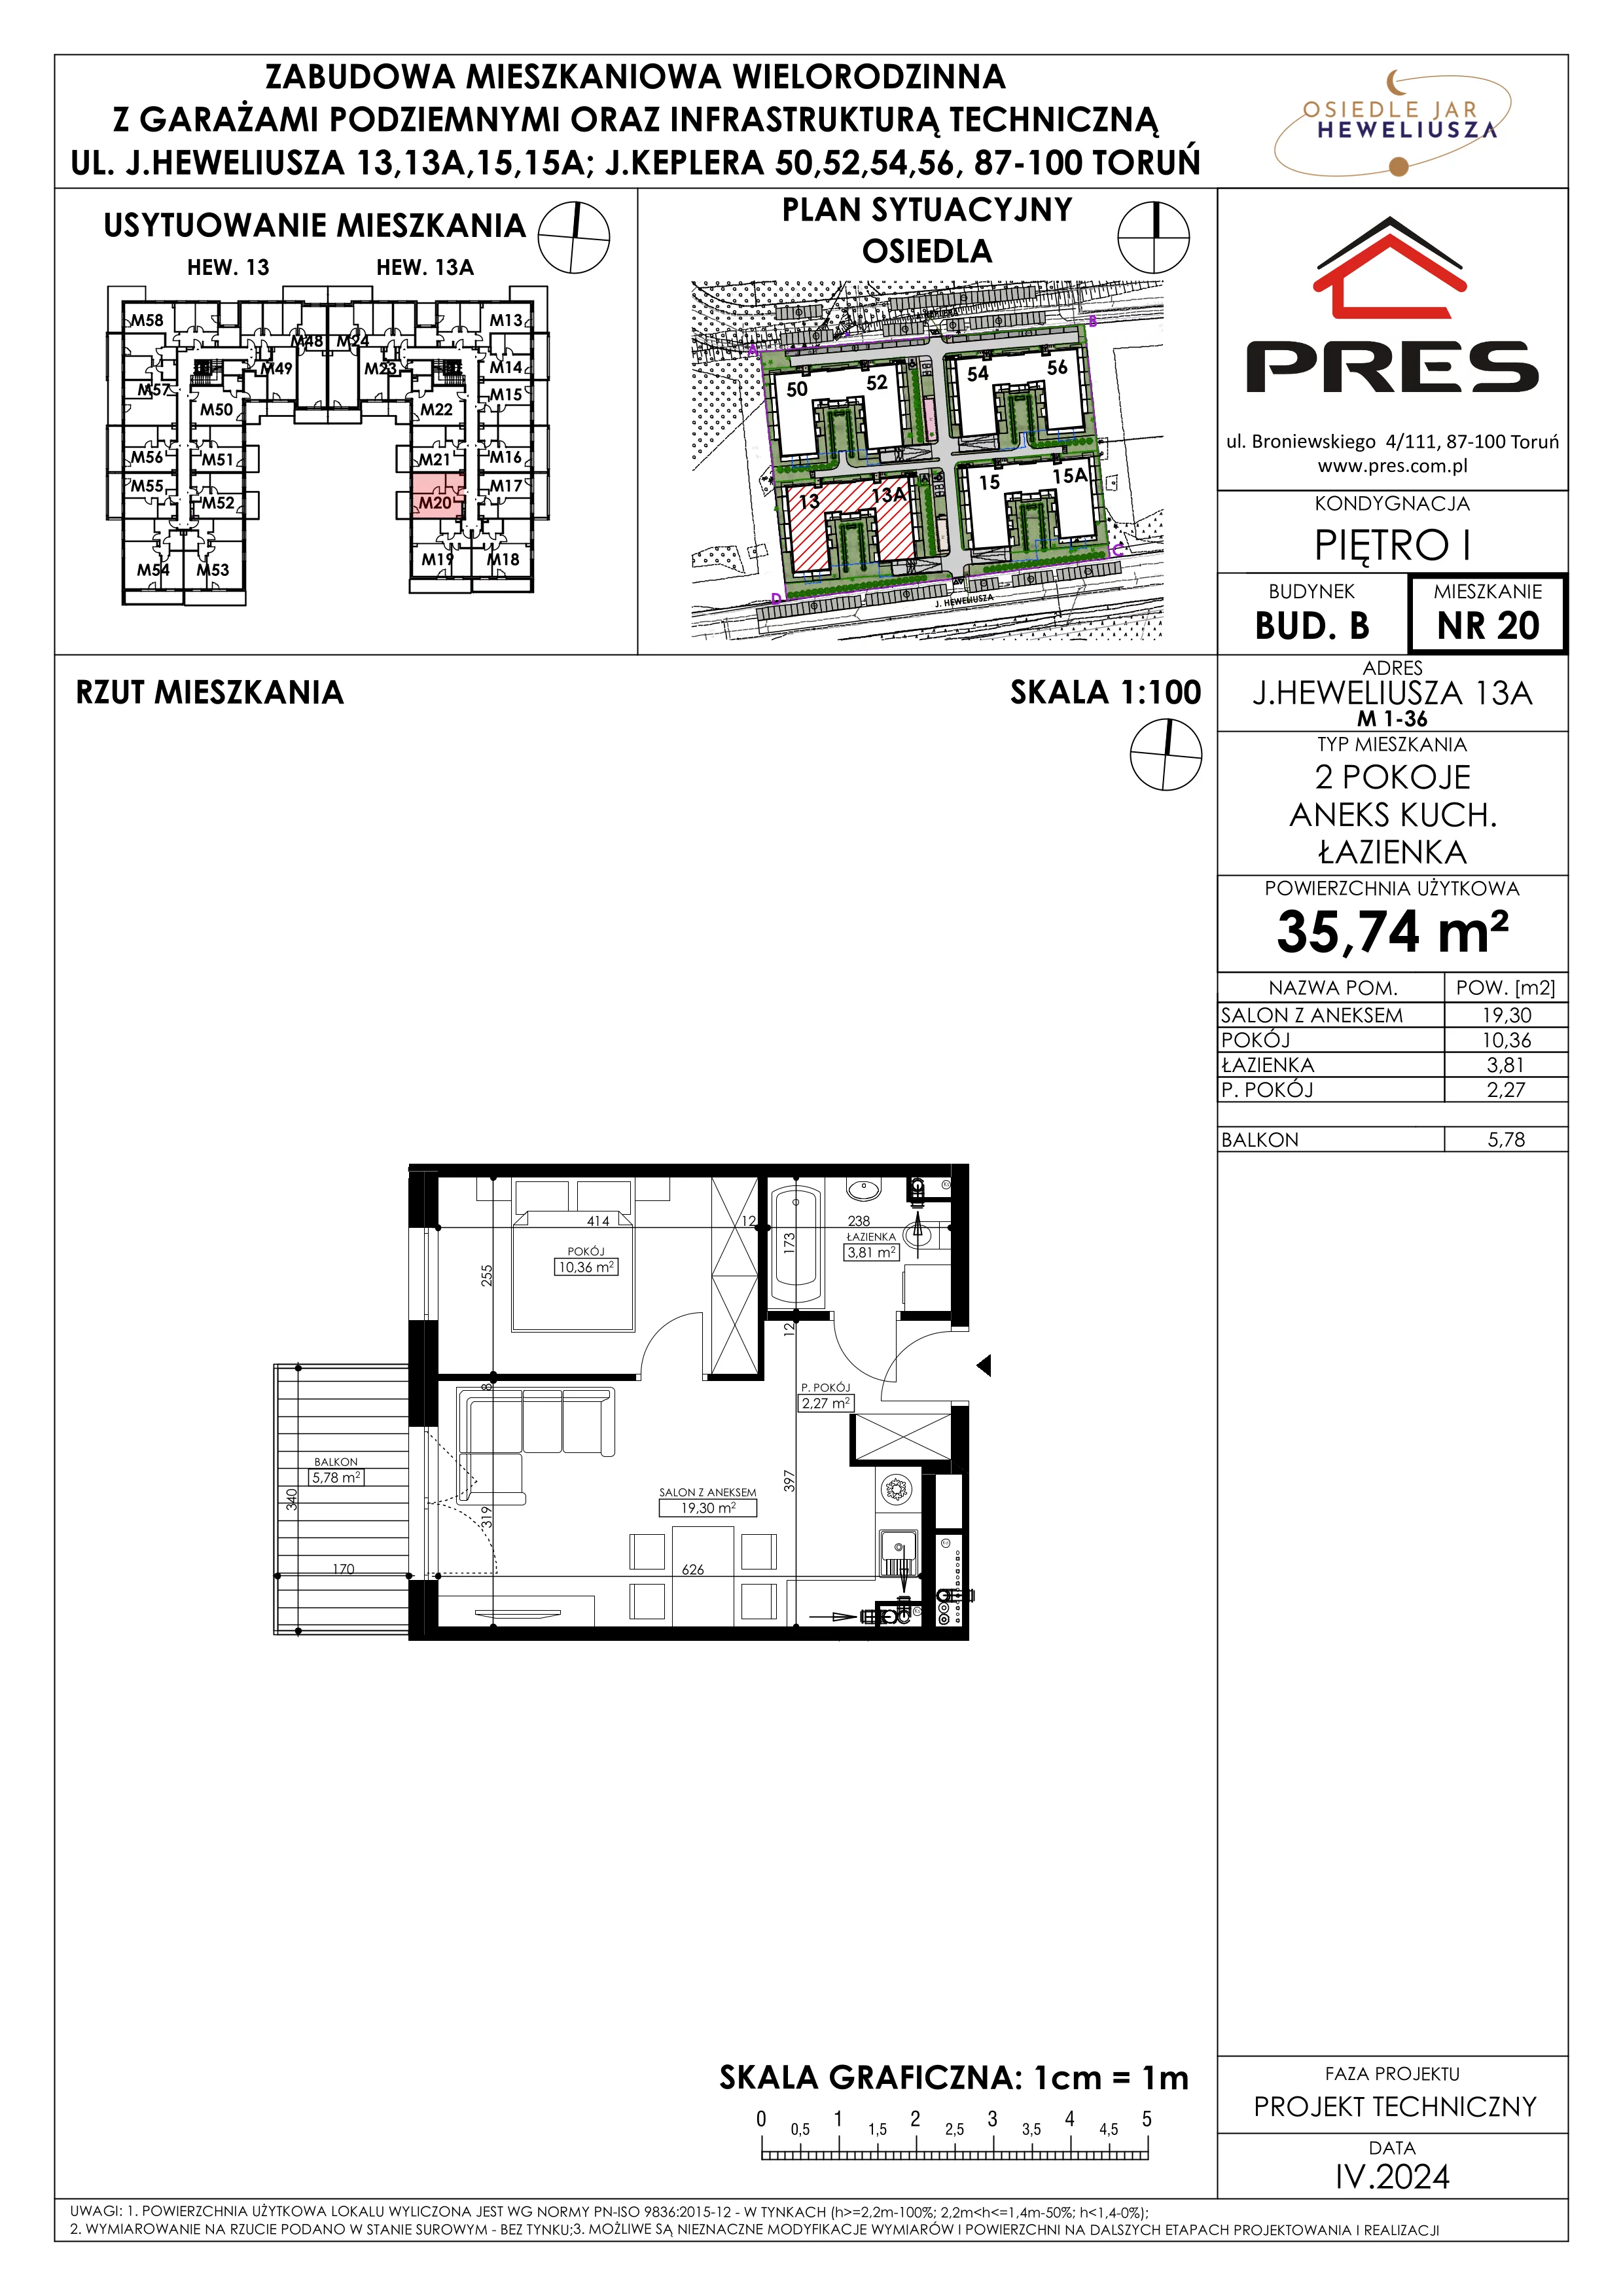 Mieszkanie 35,74 m², piętro 1, oferta nr 20, Osiedle JAR Heweliusza - Etap II, Toruń, Wrzosy, JAR, ul. Heweliusza 13-15A